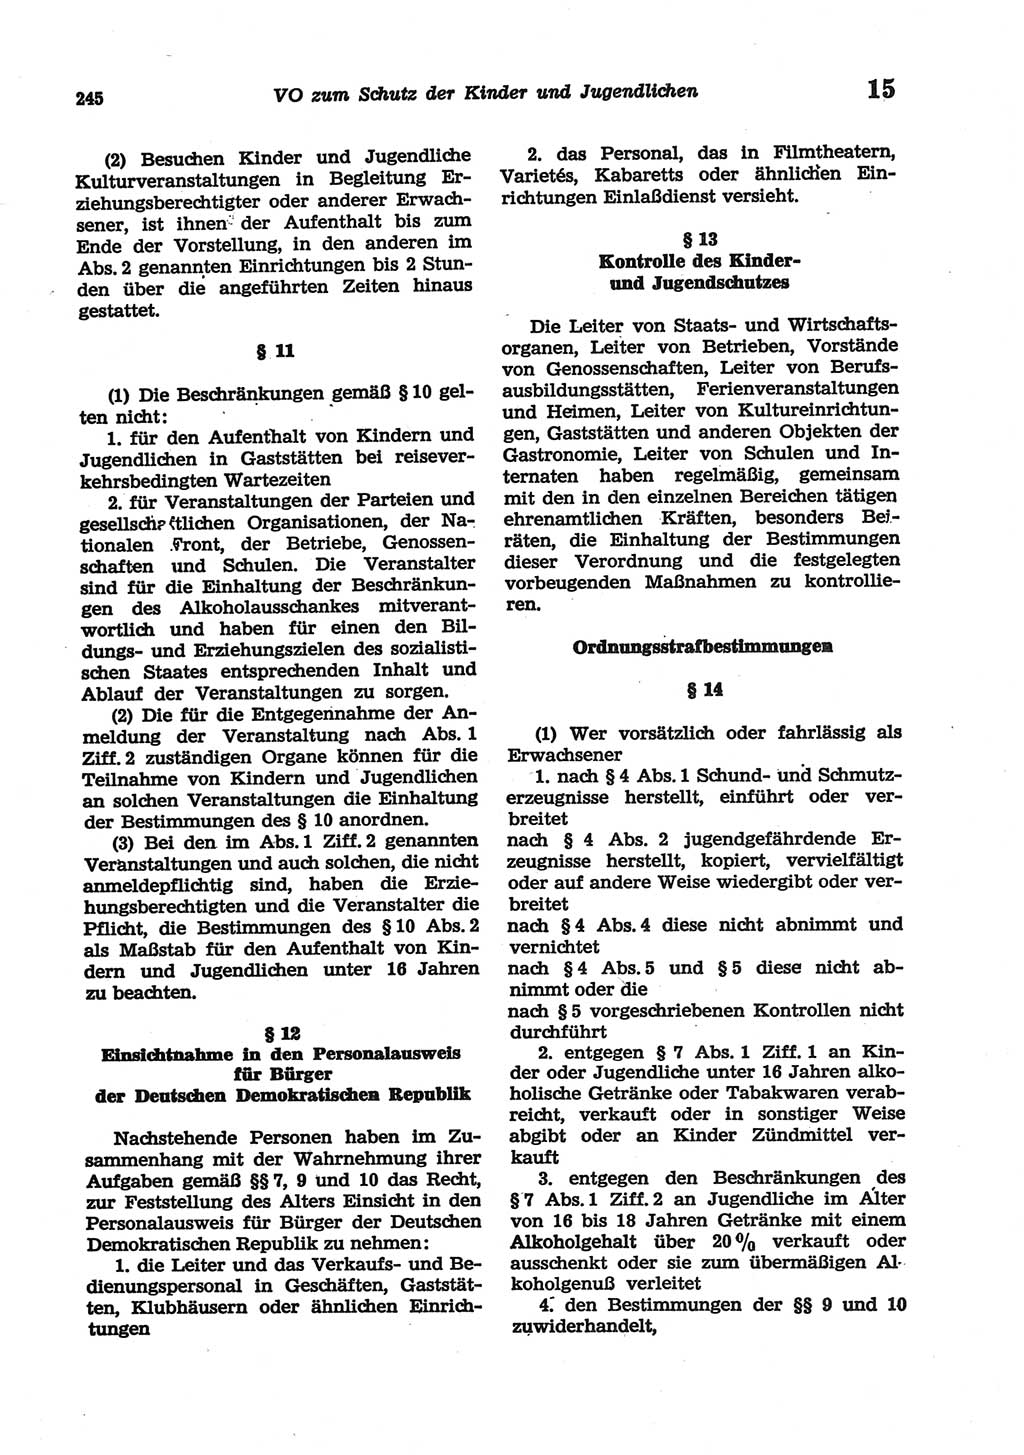 Strafgesetzbuch (StGB) der Deutschen Demokratischen Republik (DDR) und angrenzende Gesetze und Bestimmungen 1977, Seite 245 (StGB DDR Ges. Best. 1977, S. 245)